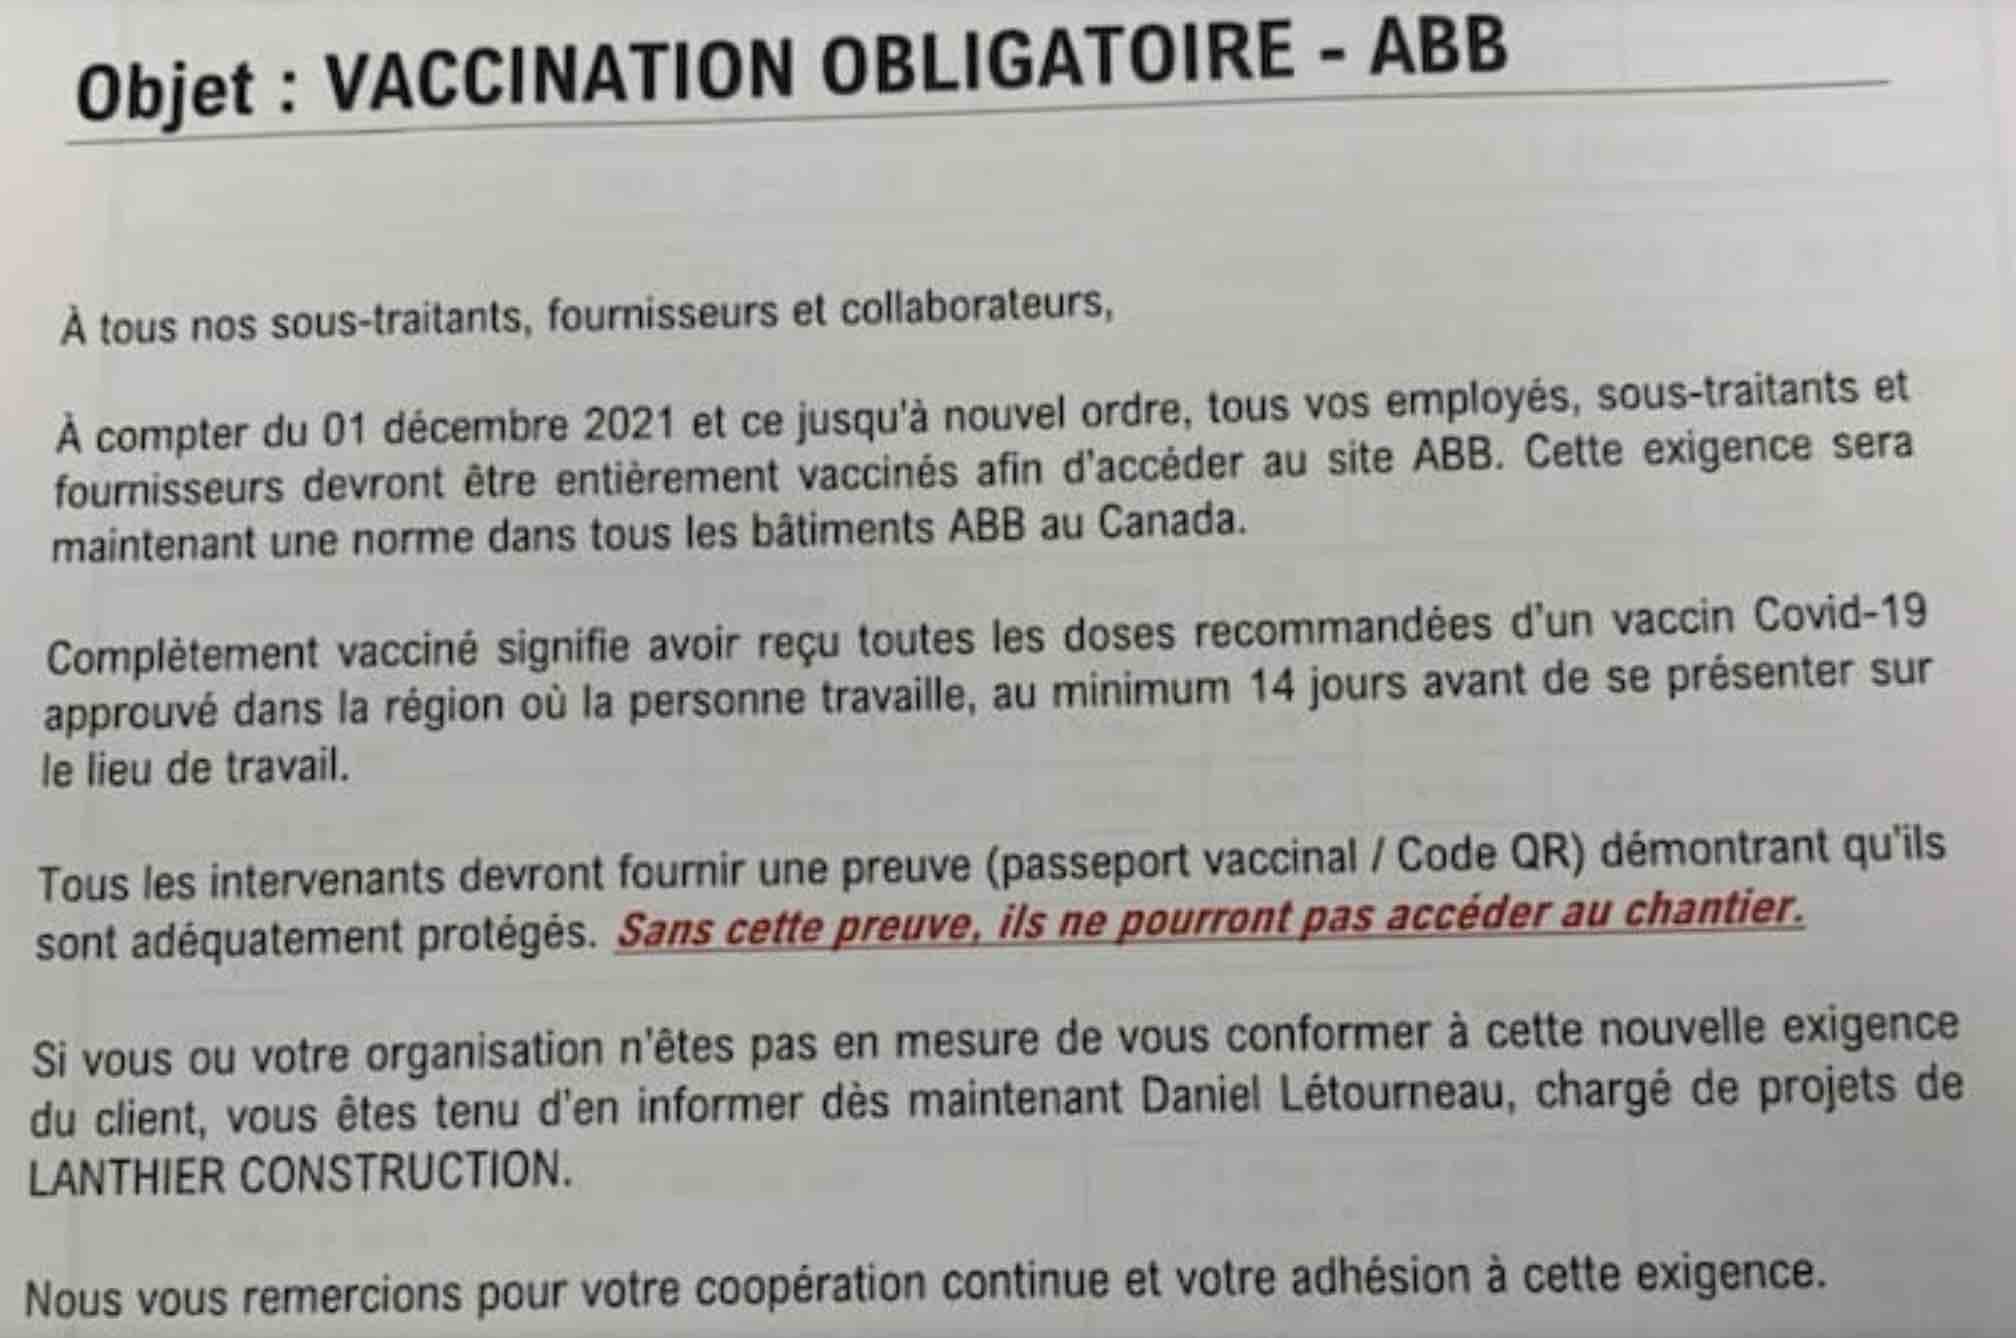 vaccination-obligatoire-lanthier-construction-et-abb-a-longueuil.jpg